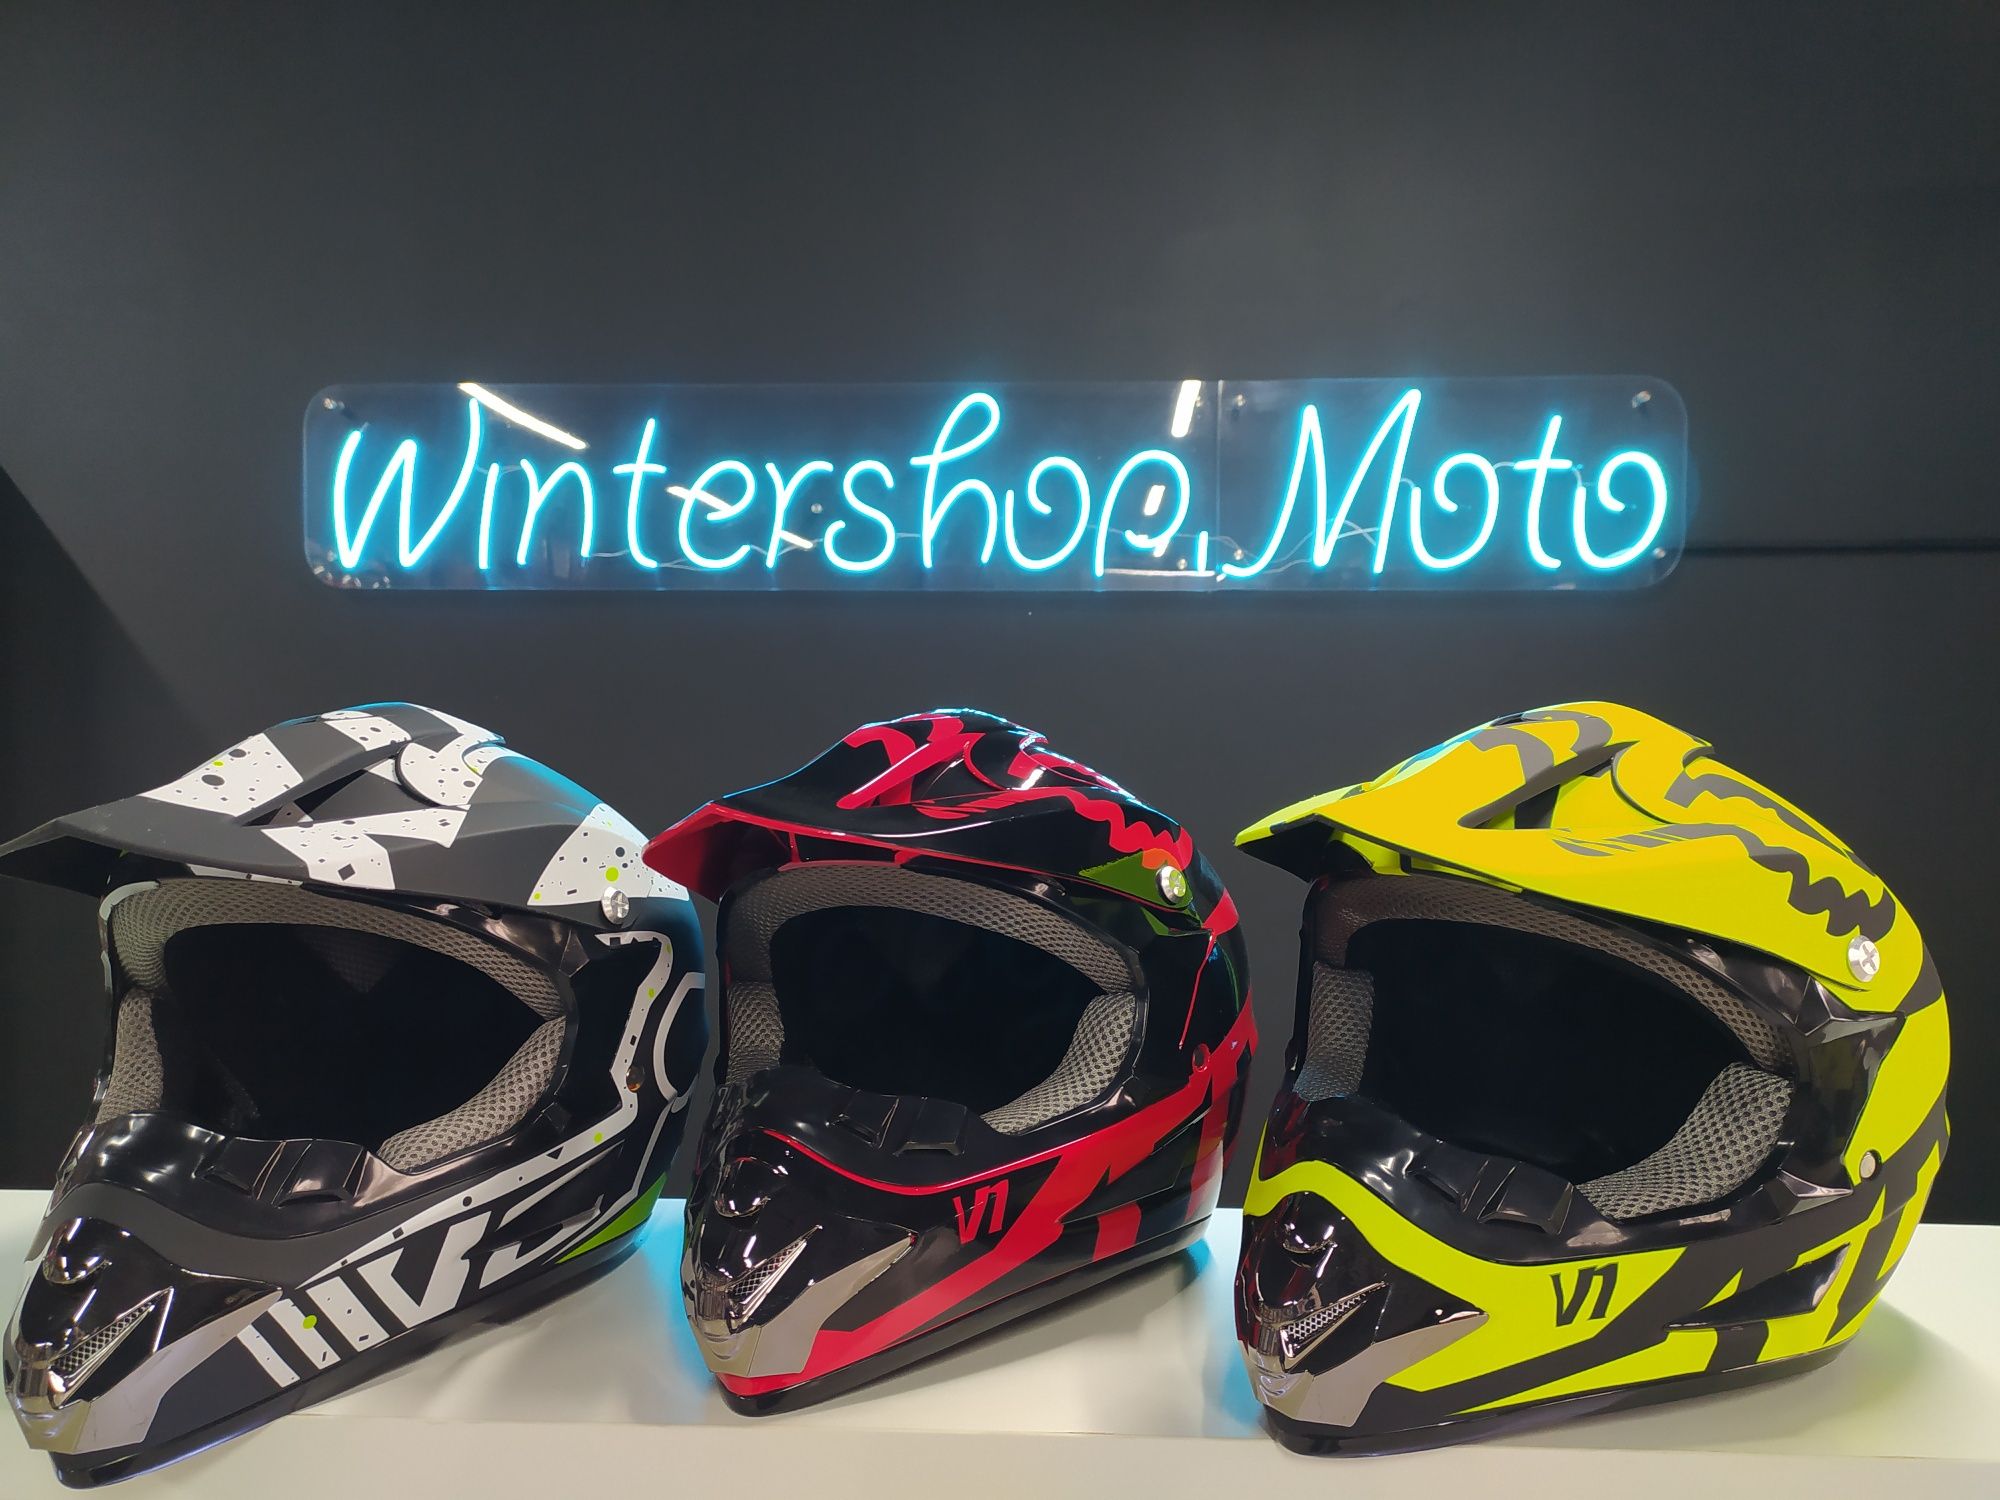 Новые,Фулфейс Шлемы! Выбор размеров и расцветок! Инста-wintershop.moto